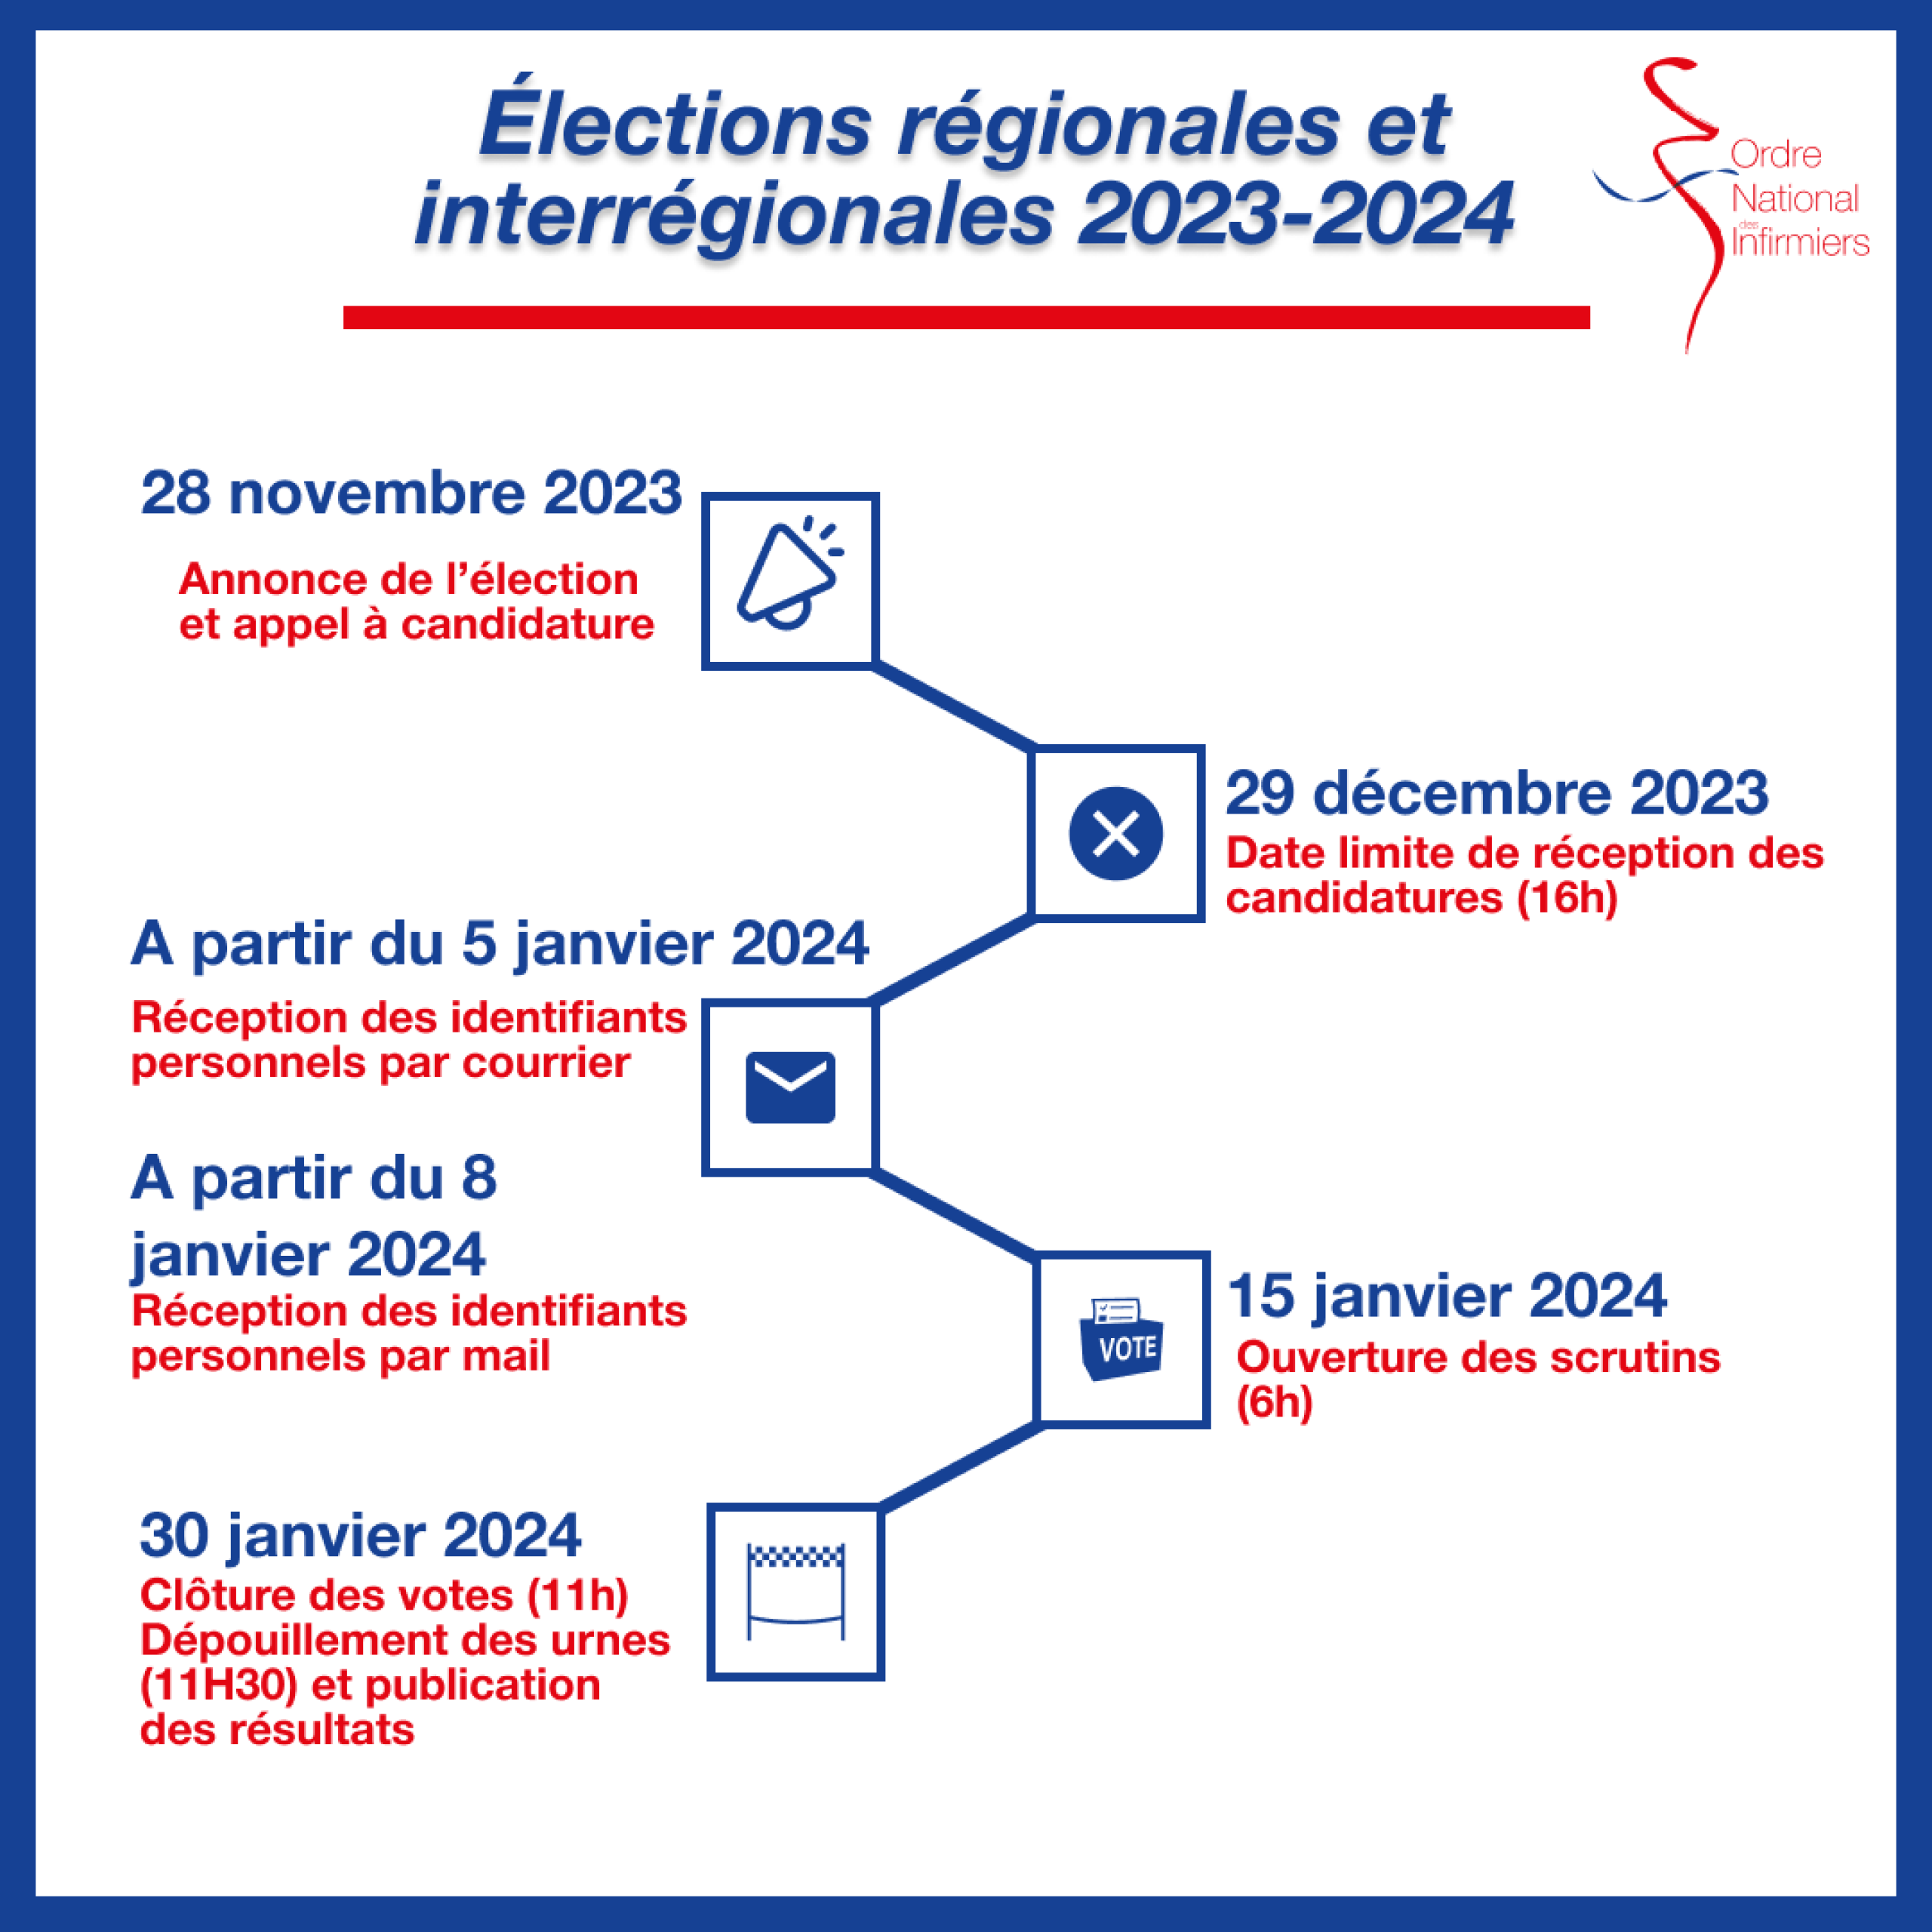 Dates clés élections régionales